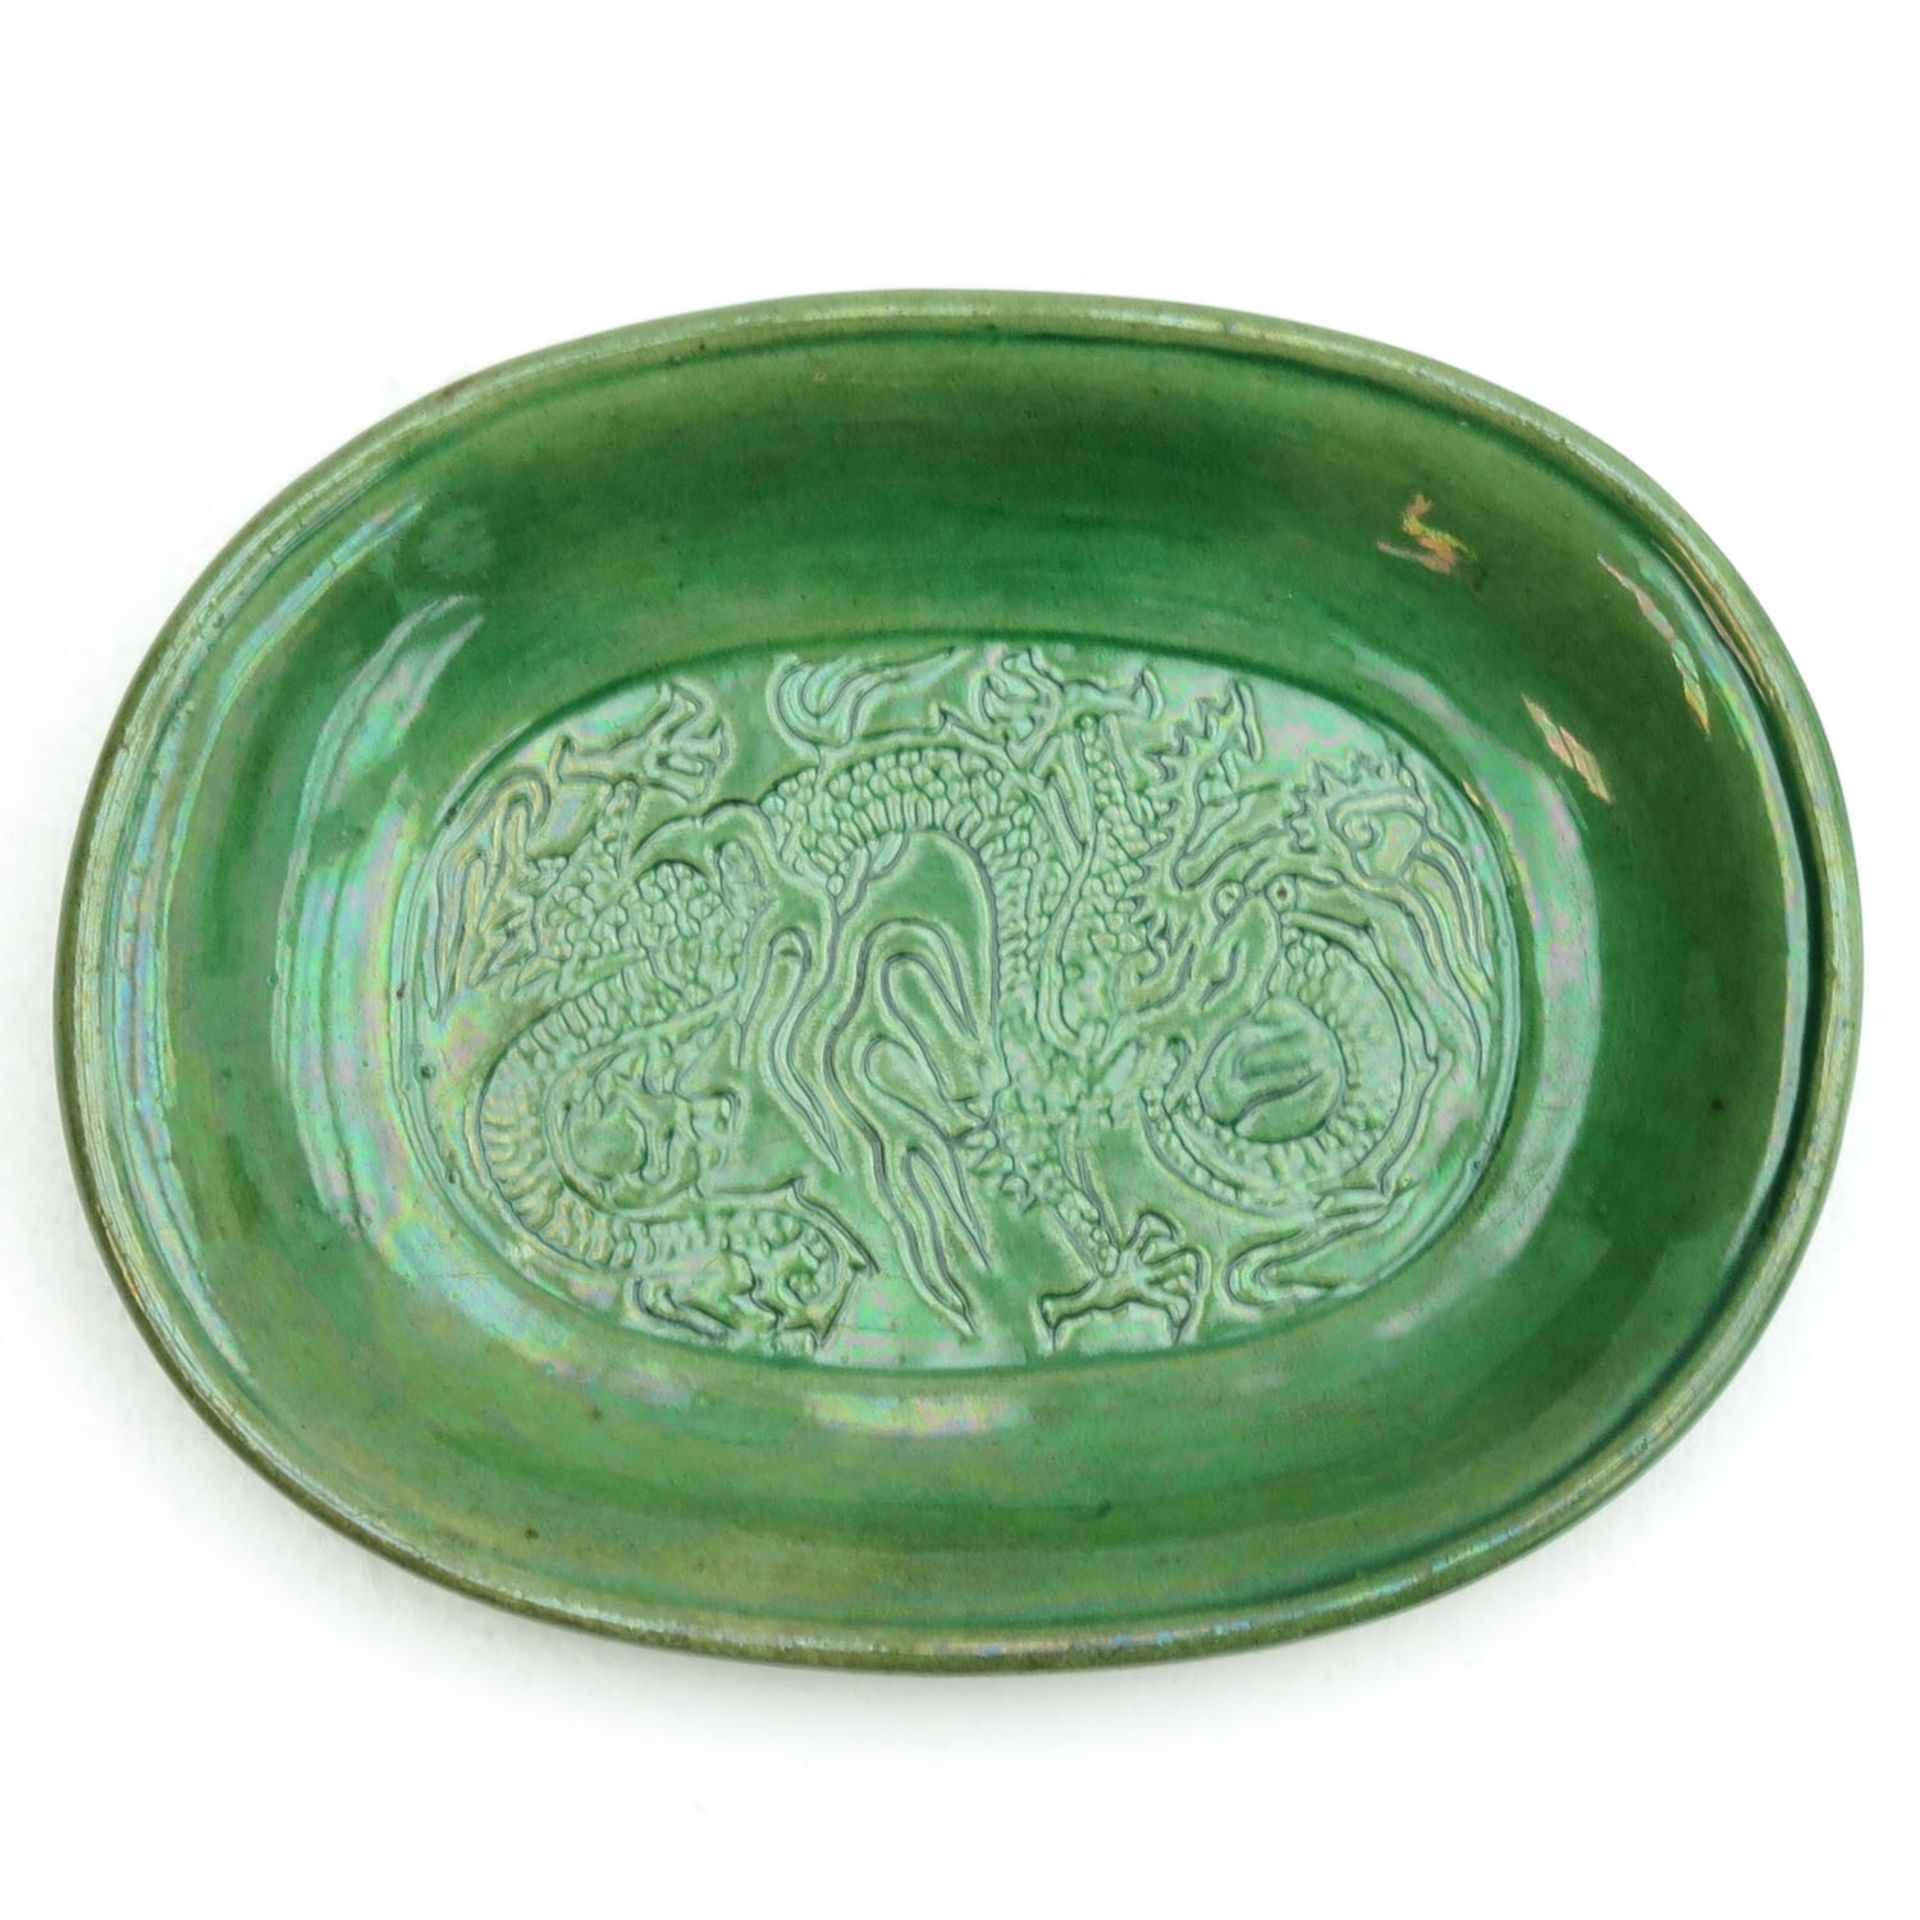 A Small Green Glaze Tray